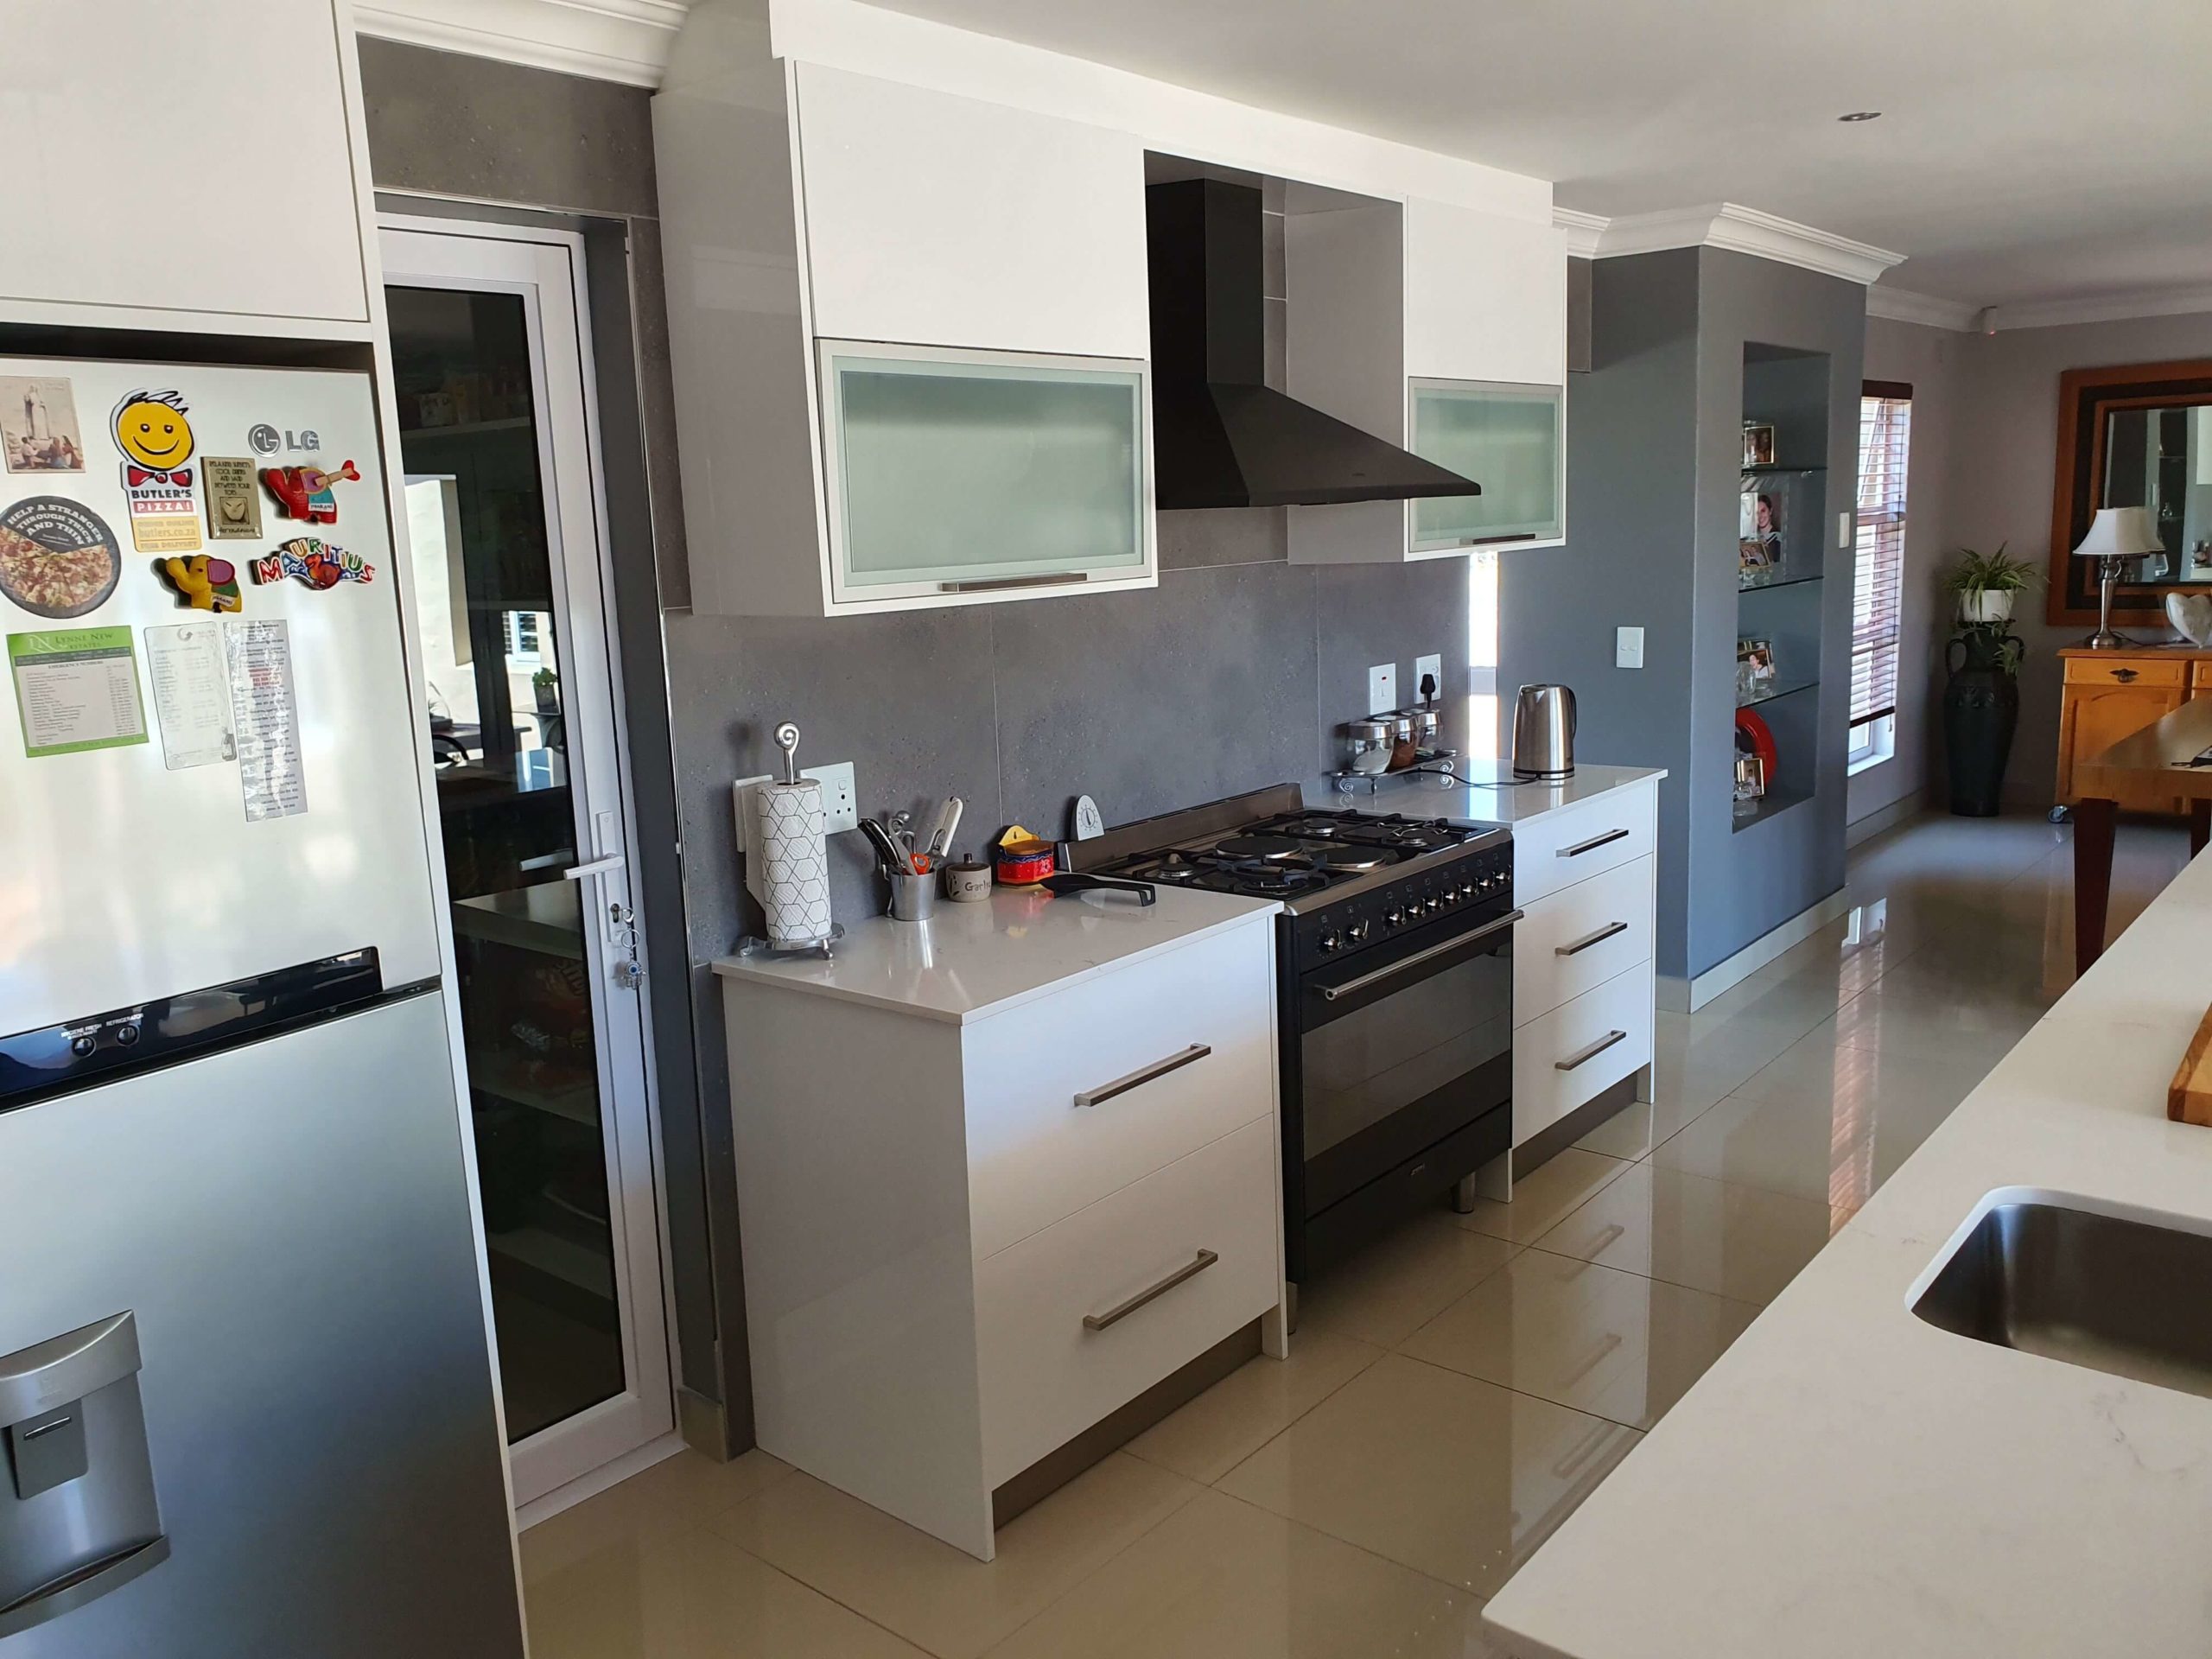 Bespoke Designs - 20191012 113127 scaled - Kitchen renovation Cape Town,kitchen renovation,Kitchen renovation services,kitchen renovation specialists